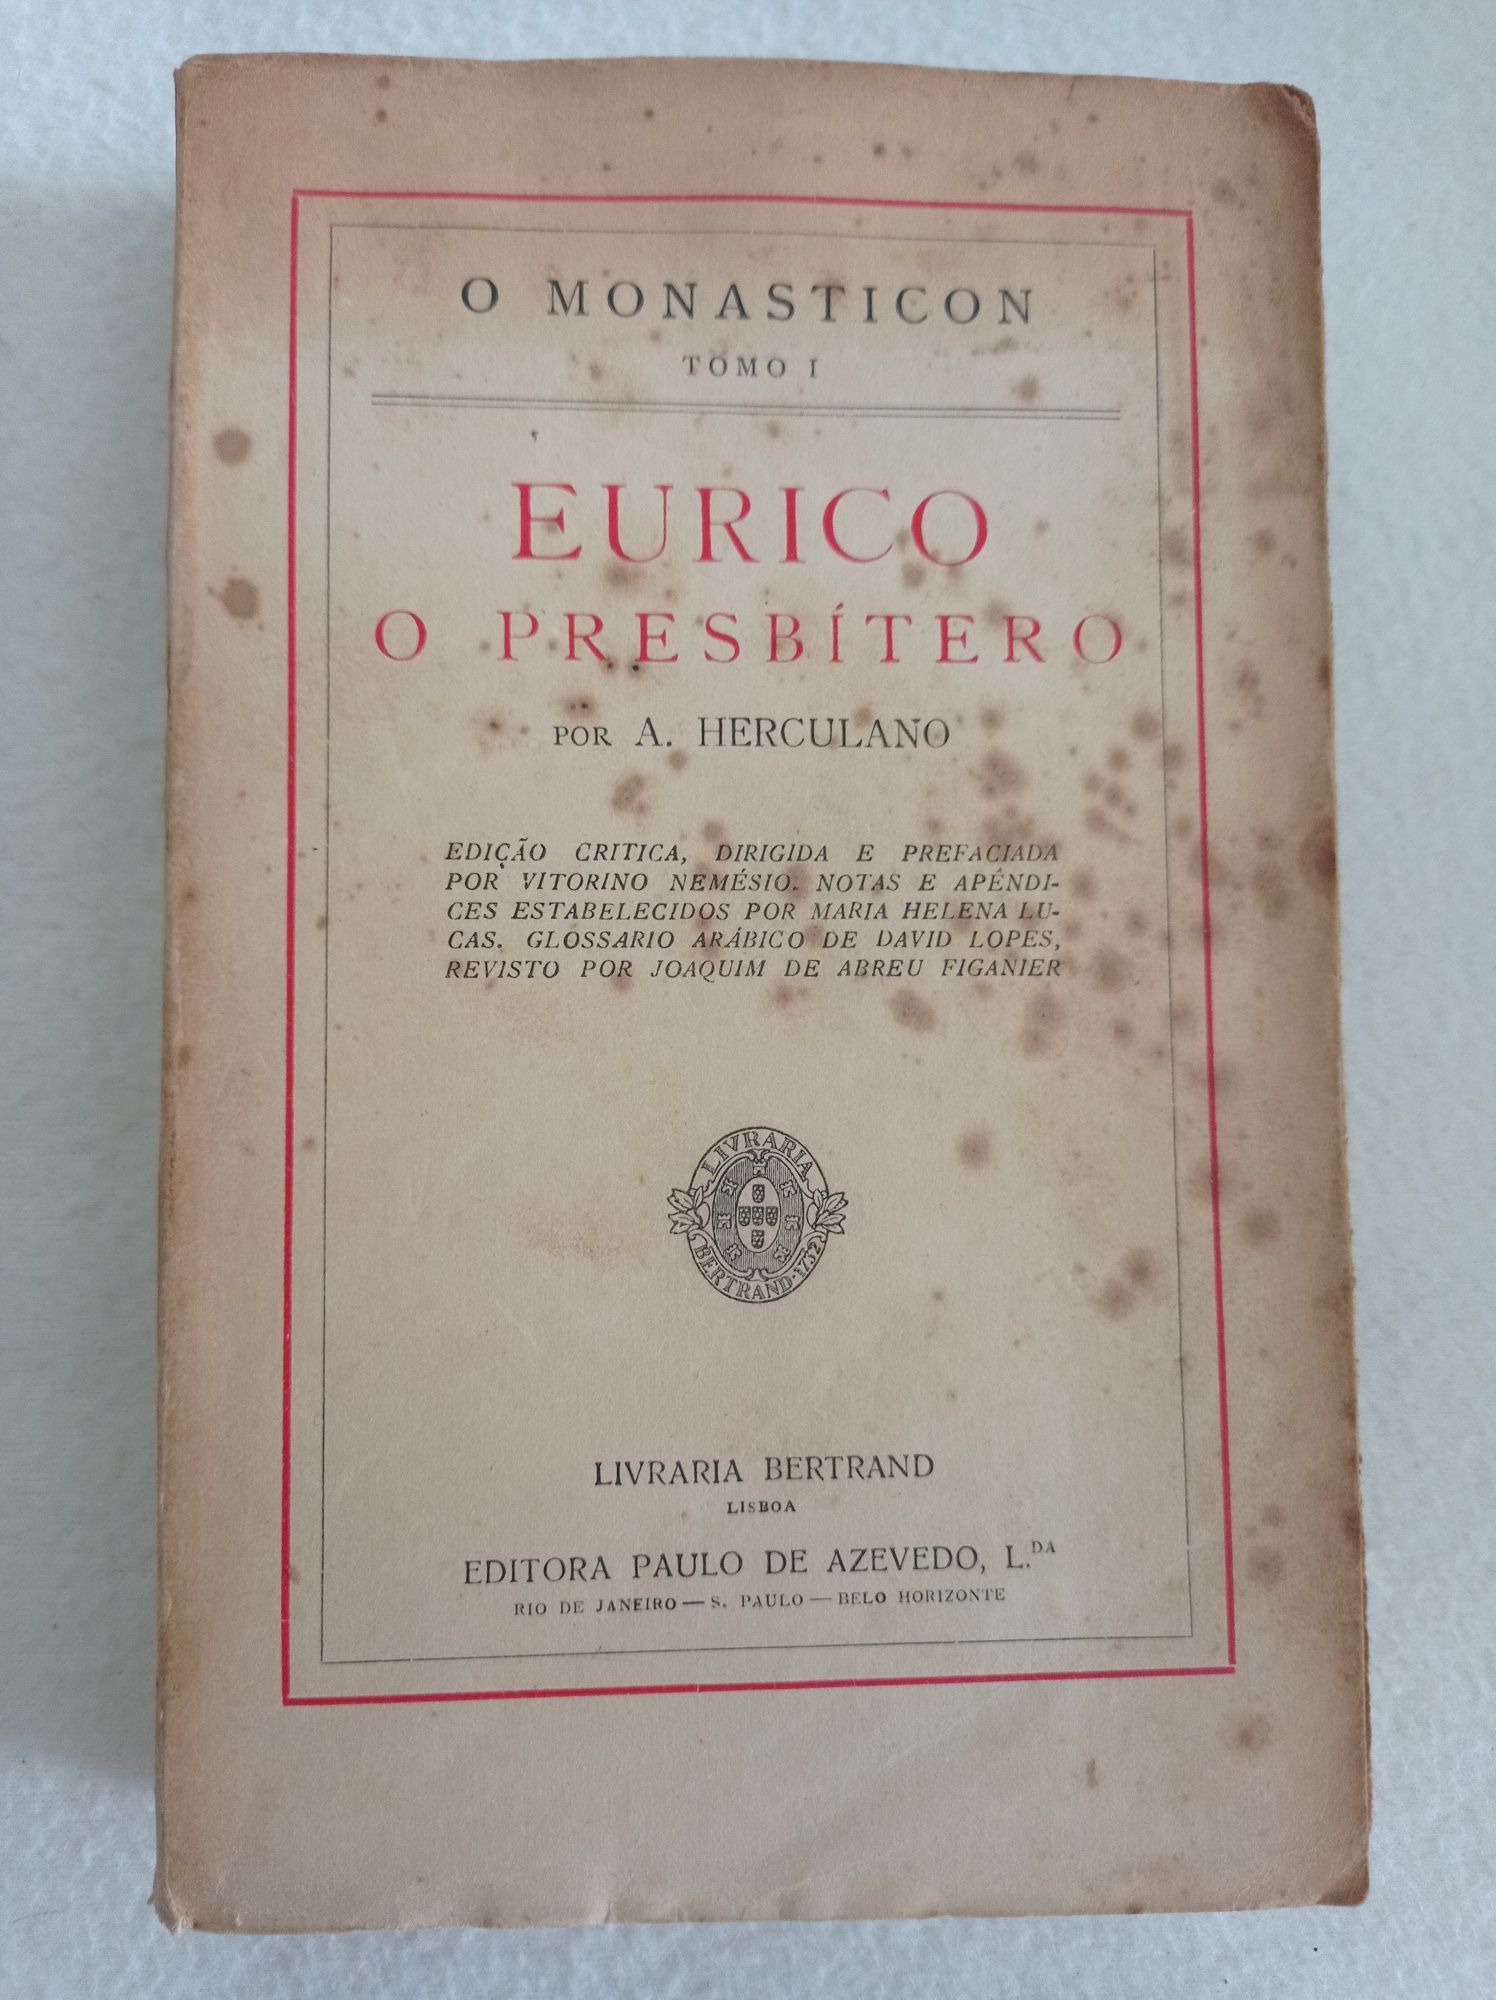 O monasticon - tomo I - Eurico o presbítero - Alexandre Herculano